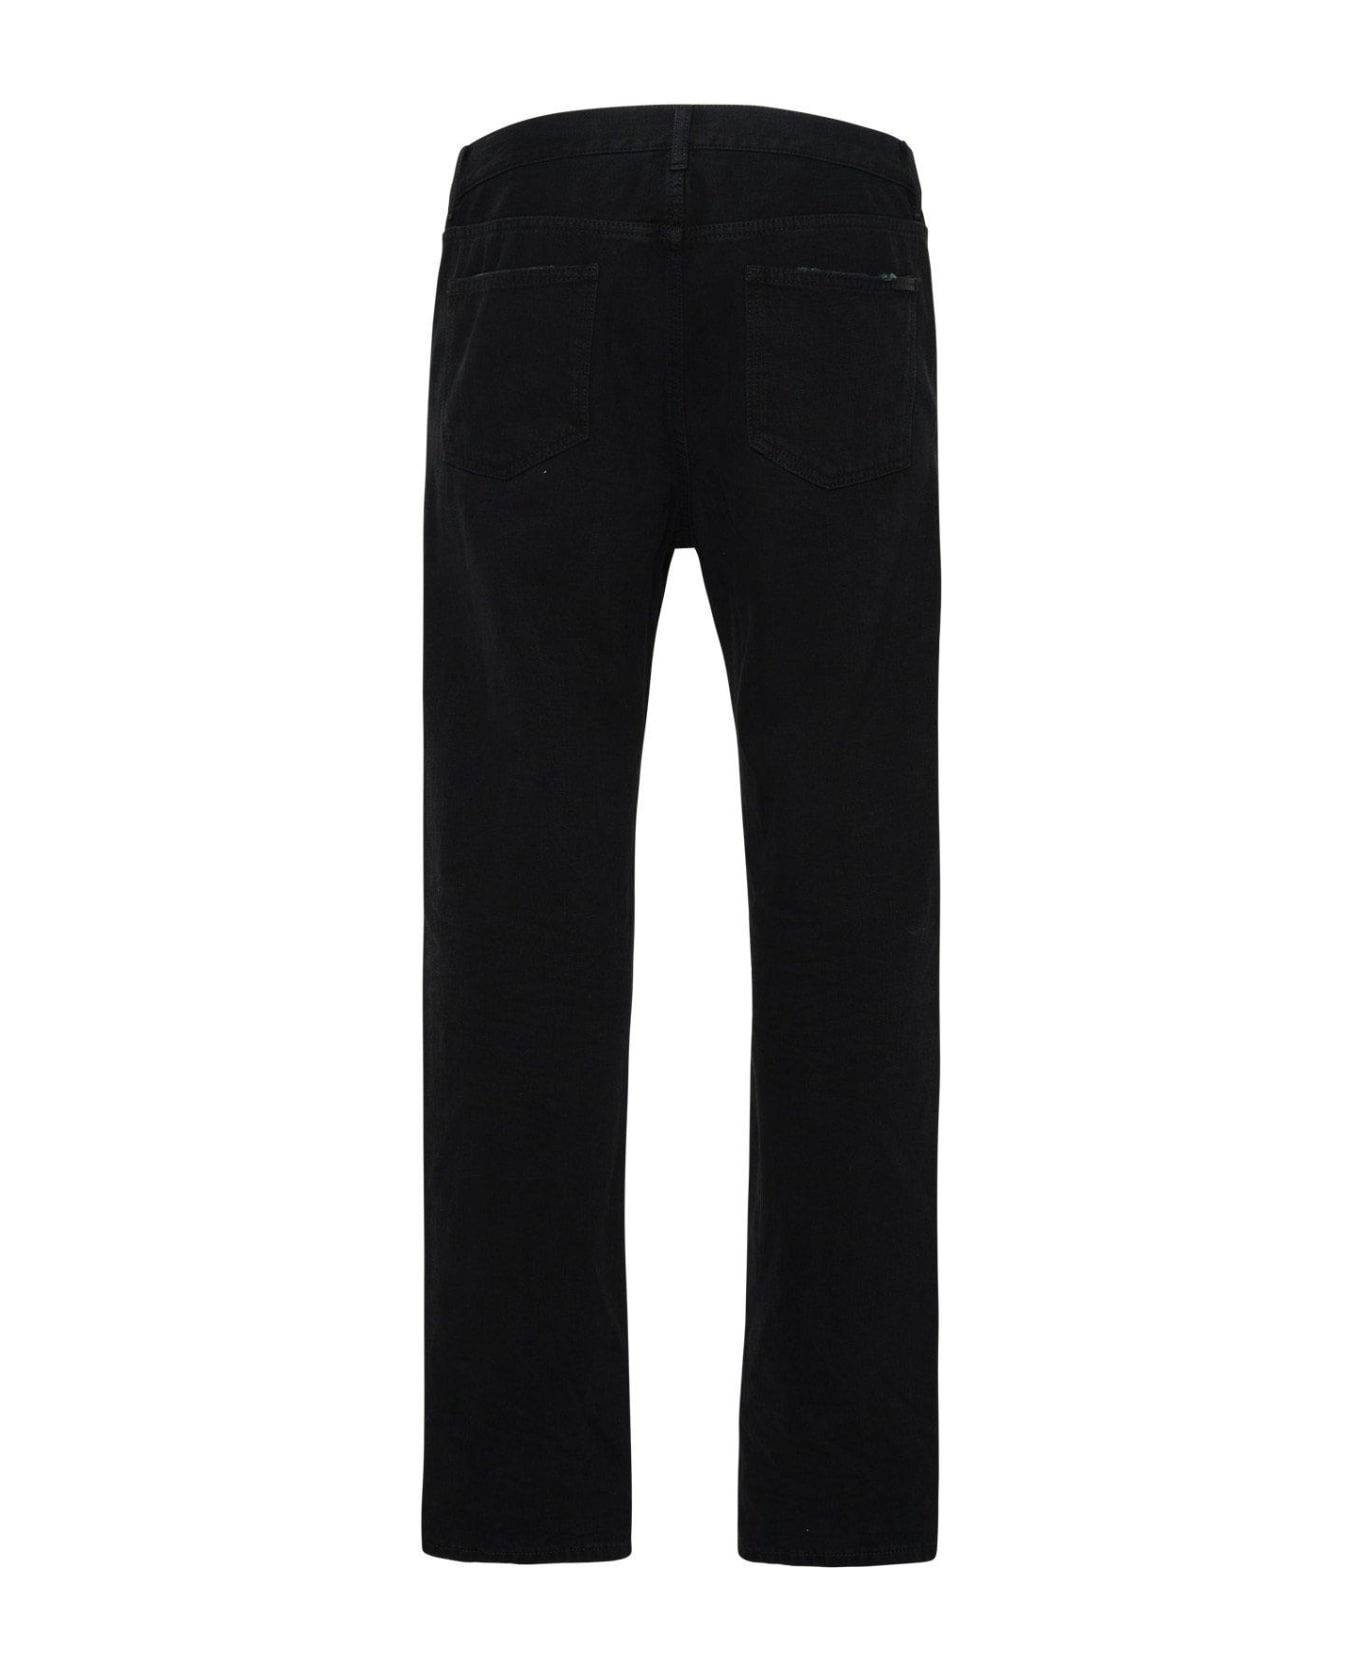 Saint Laurent Five Pocket Jeans - BLACK WASHED デニム